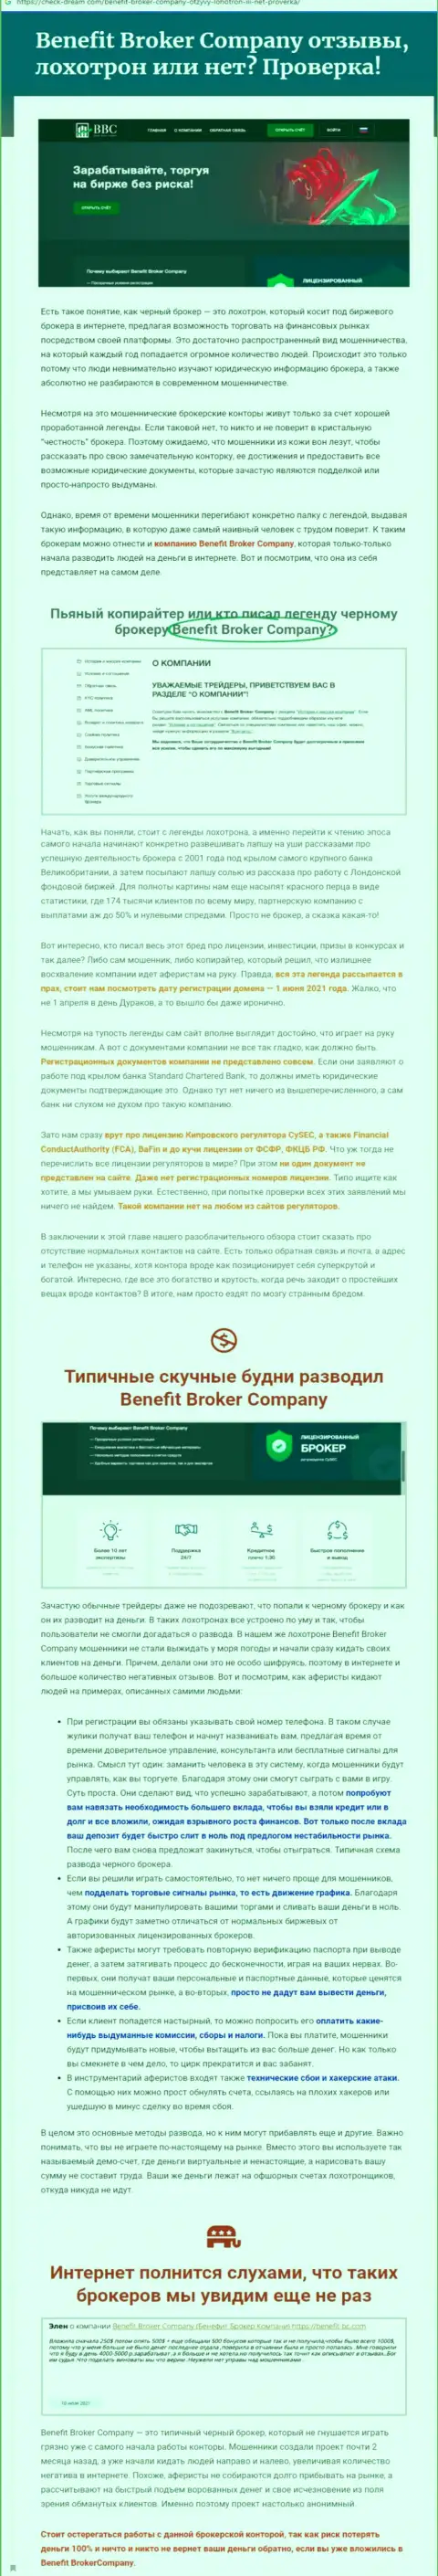 Не опасно ли сотрудничать с компанией Benefit Broker Company ? (Обзор деяний компании)